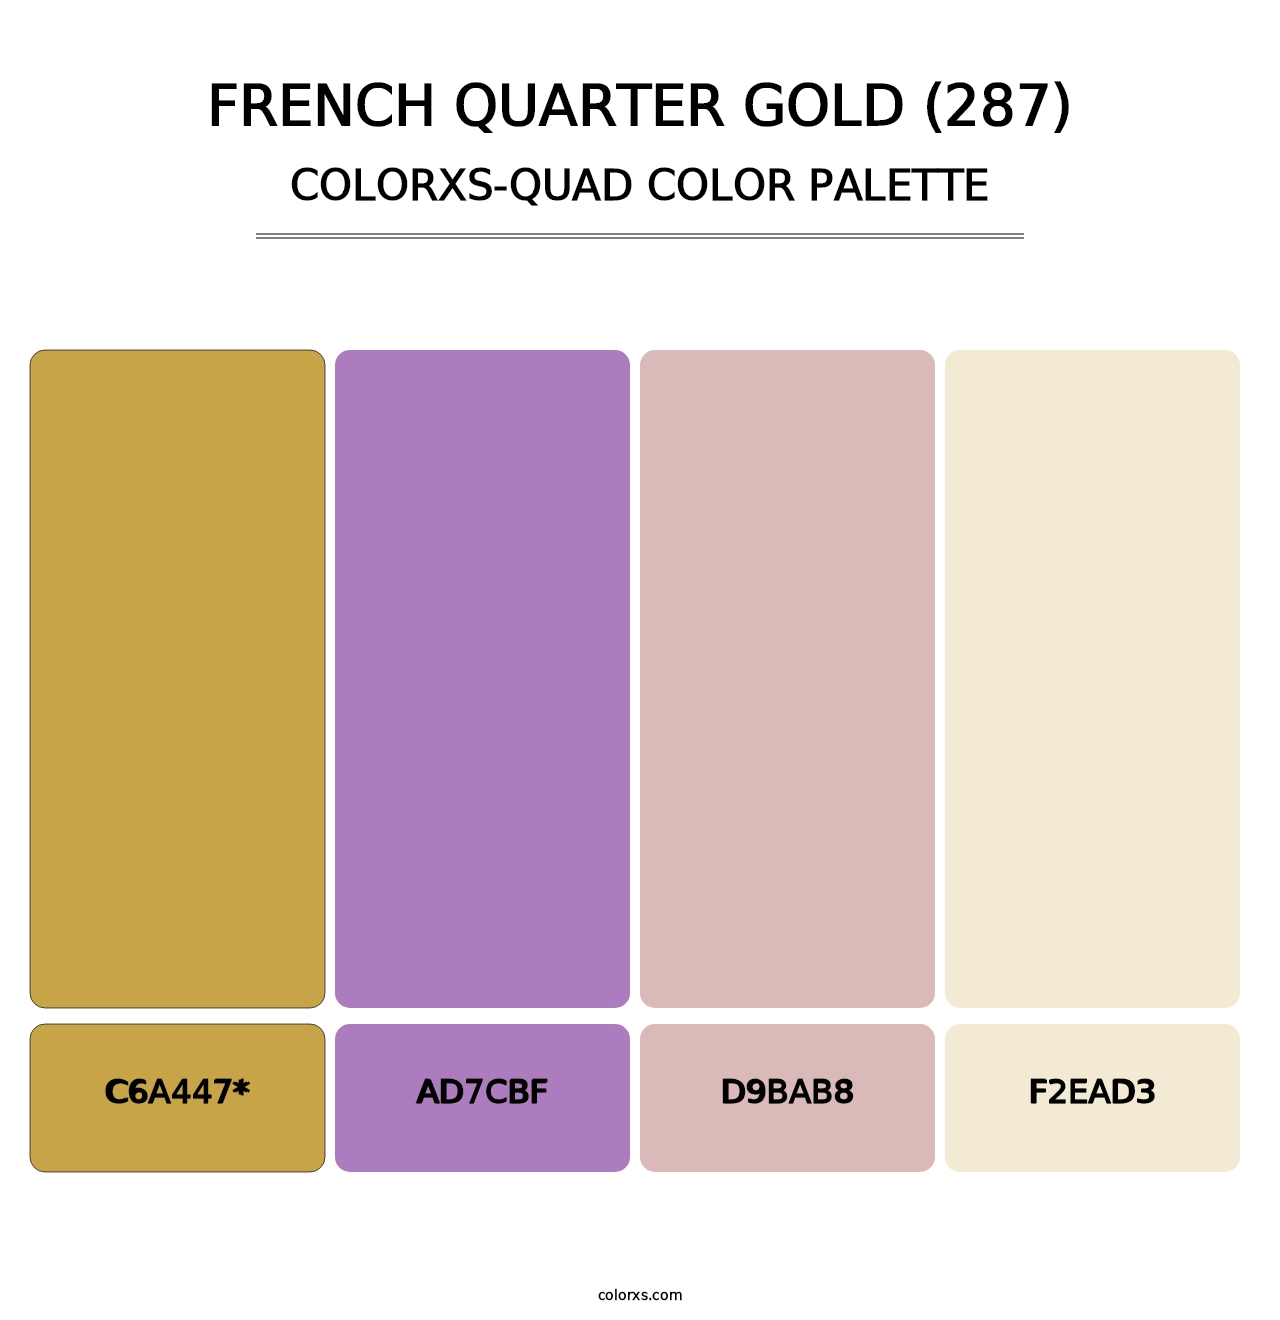 French Quarter Gold (287) - Colorxs Quad Palette